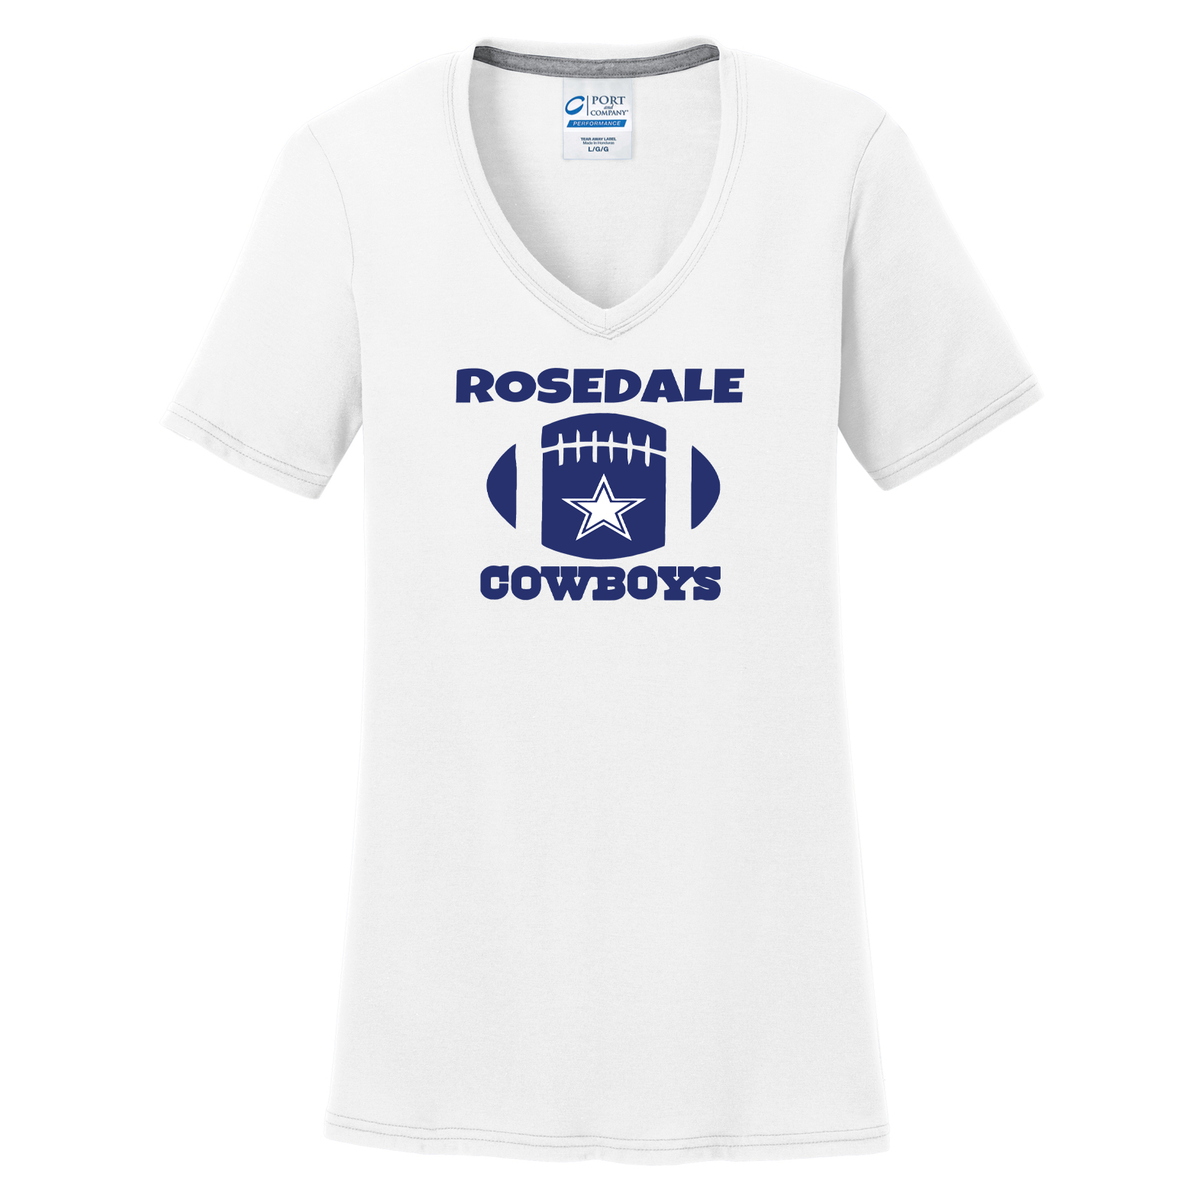 Rosedale Cowboys Women's T-Shirt